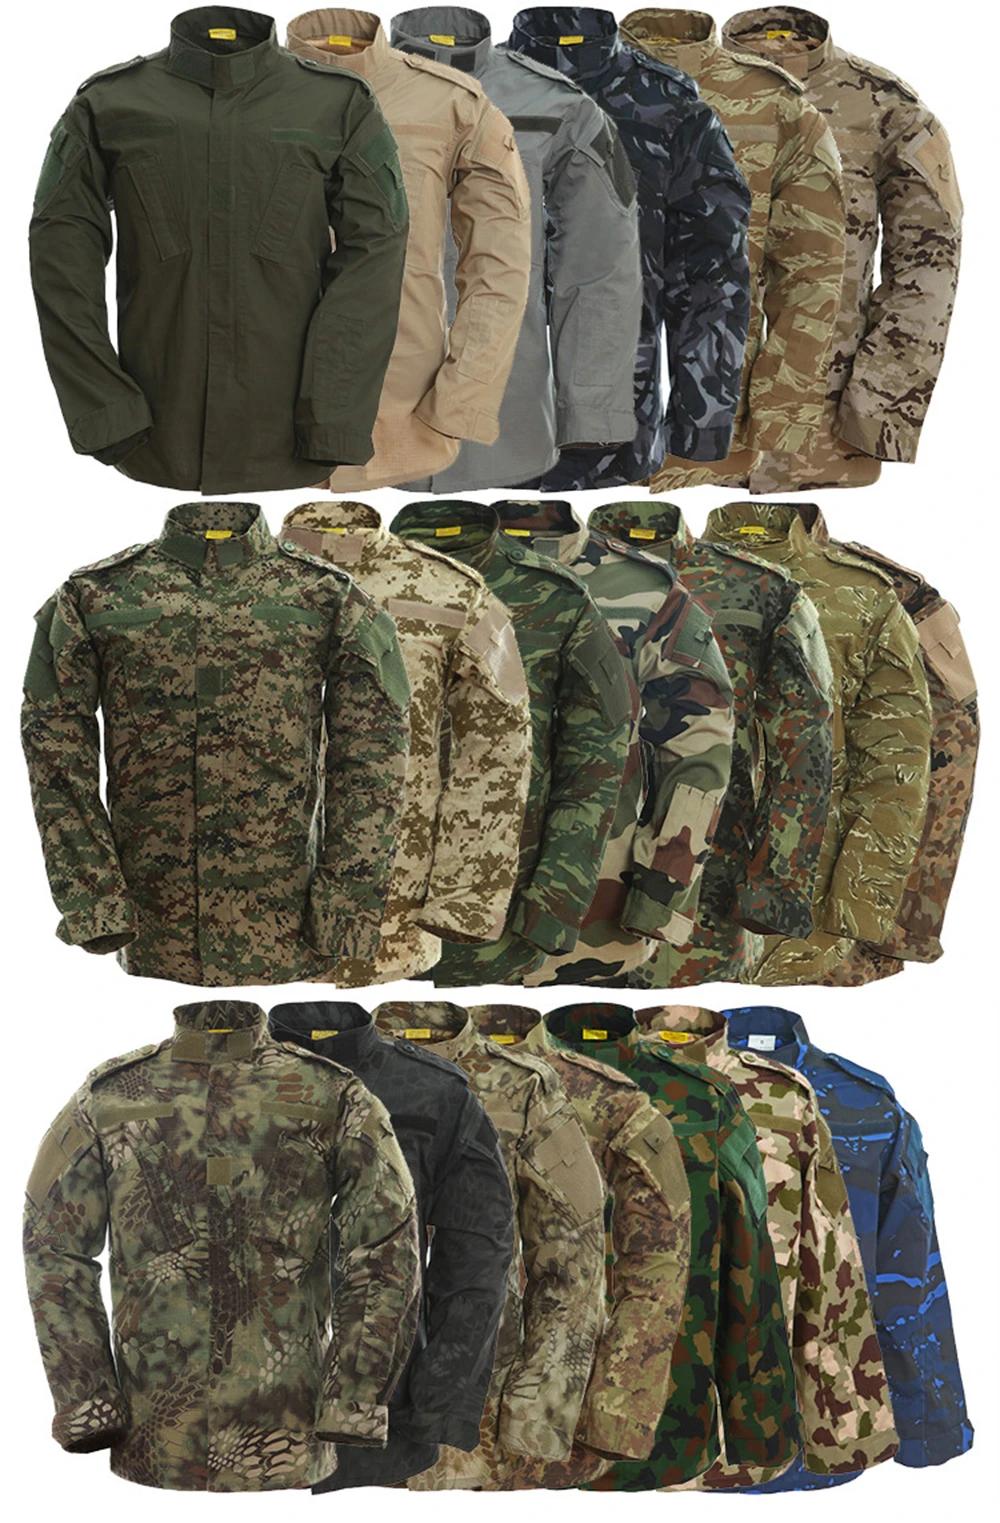 2 шт. мужской уличный спортивный камуфляж куртка брюки набор Военная тактическая одежда для охоты Кемпинг Туризм солдат обучение